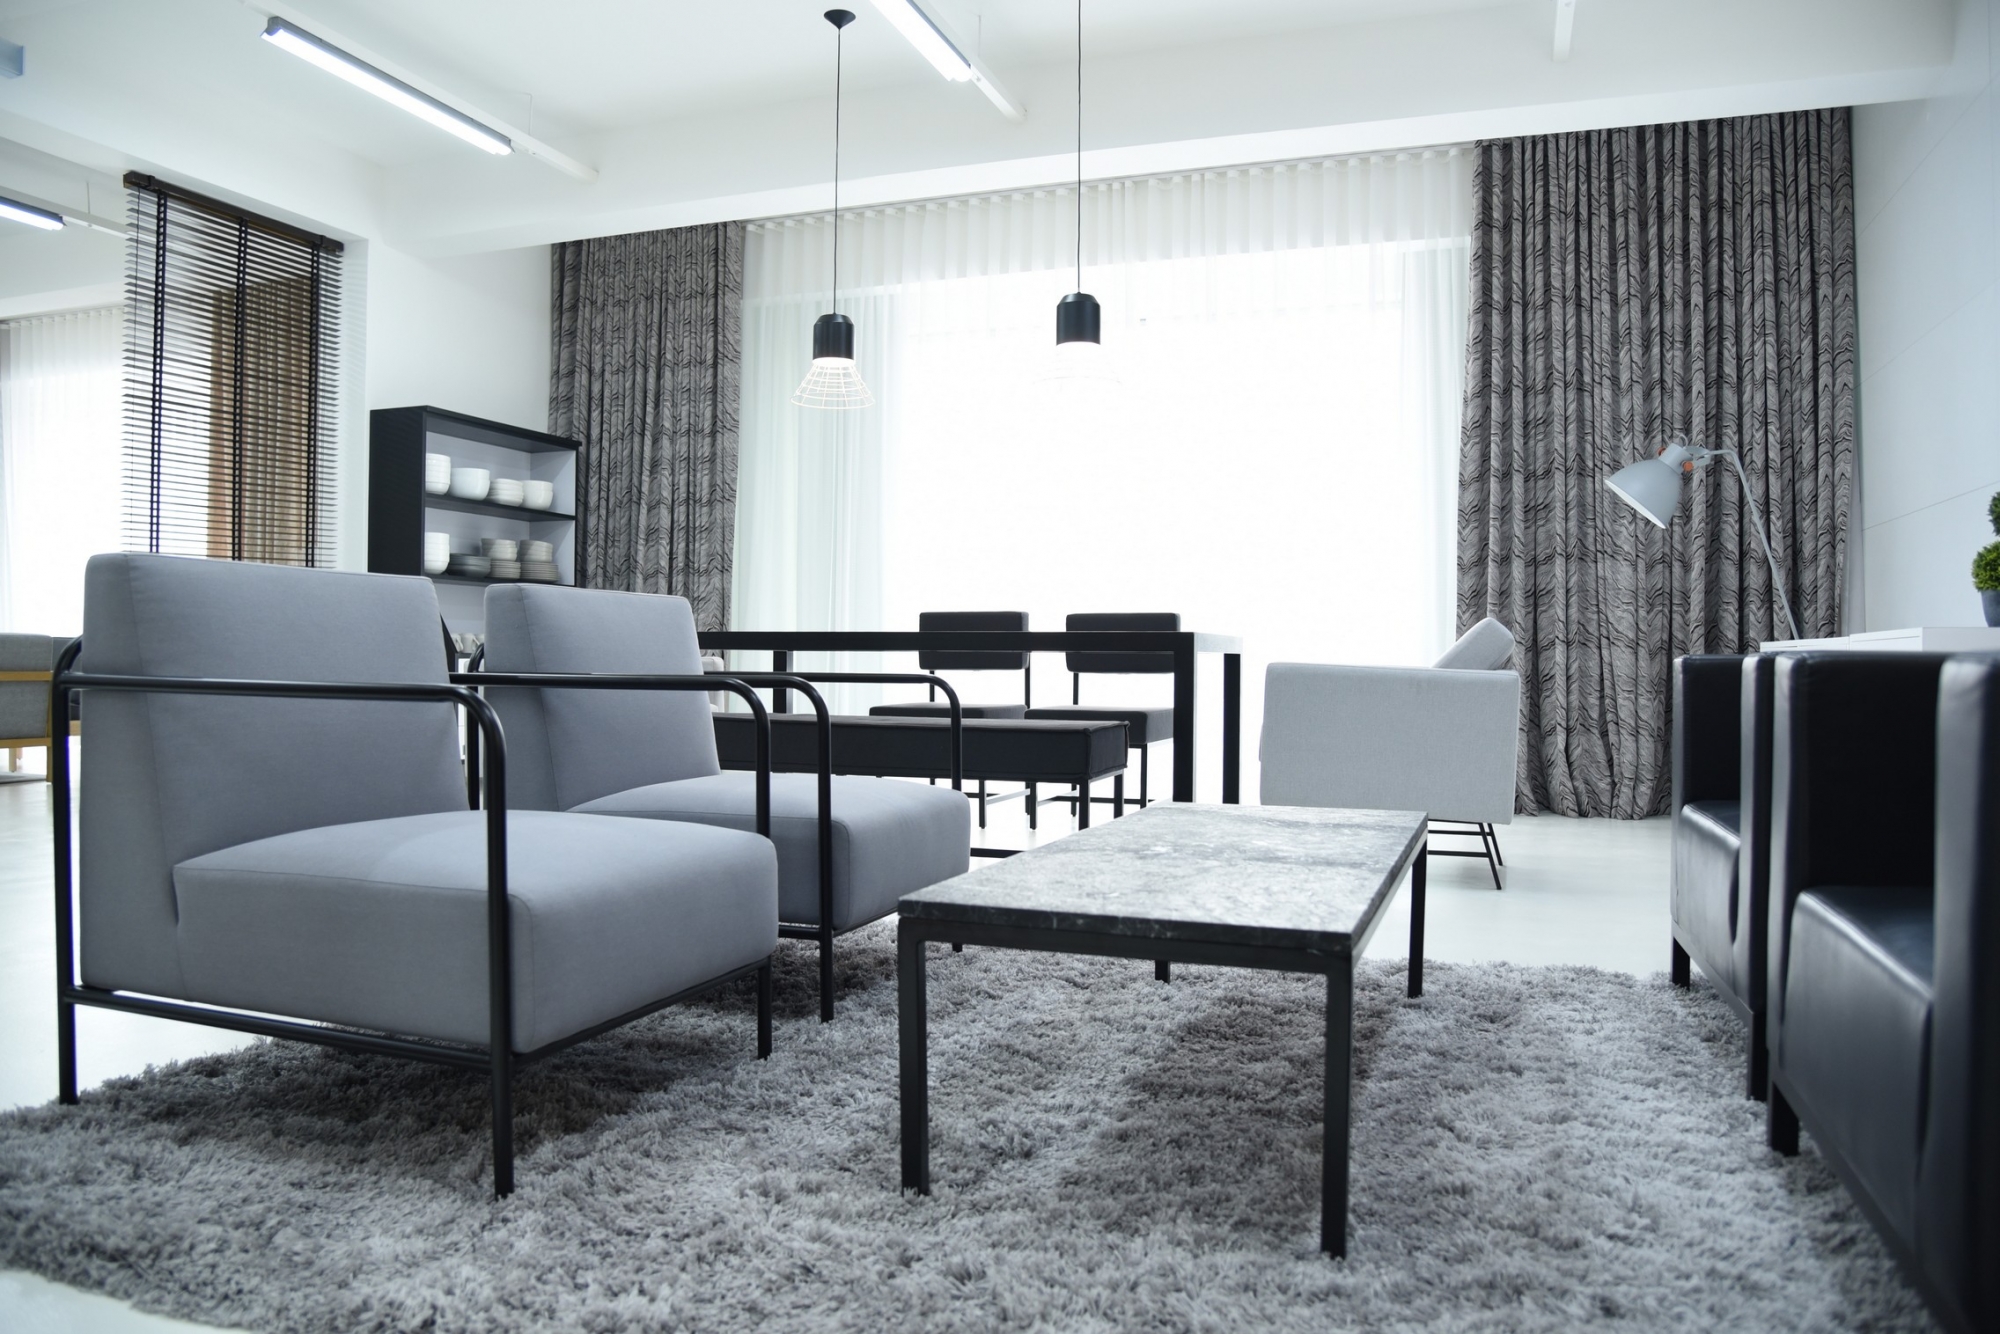 tapete malaysia design,möbel,wohnzimmer,zimmer,innenarchitektur,eigentum